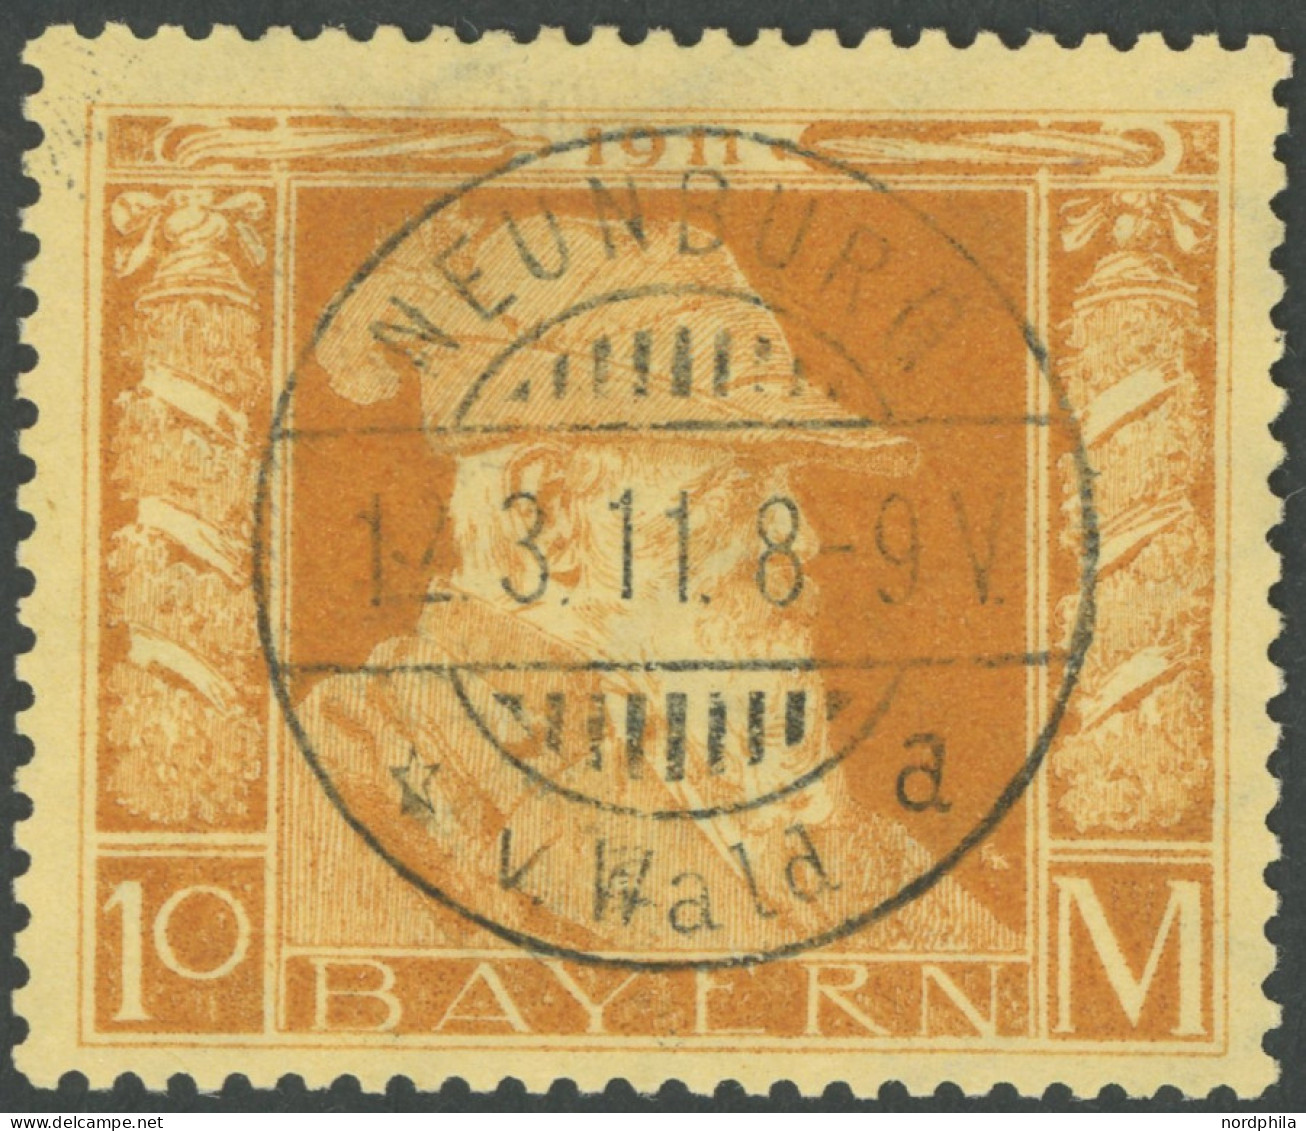 BAYERN 90II O, 1911, 10 M. Luitpold, Type II, Idealer Stempel NEUENBURG V. WALD, Pracht, Mi. 400.- - Afgestempeld